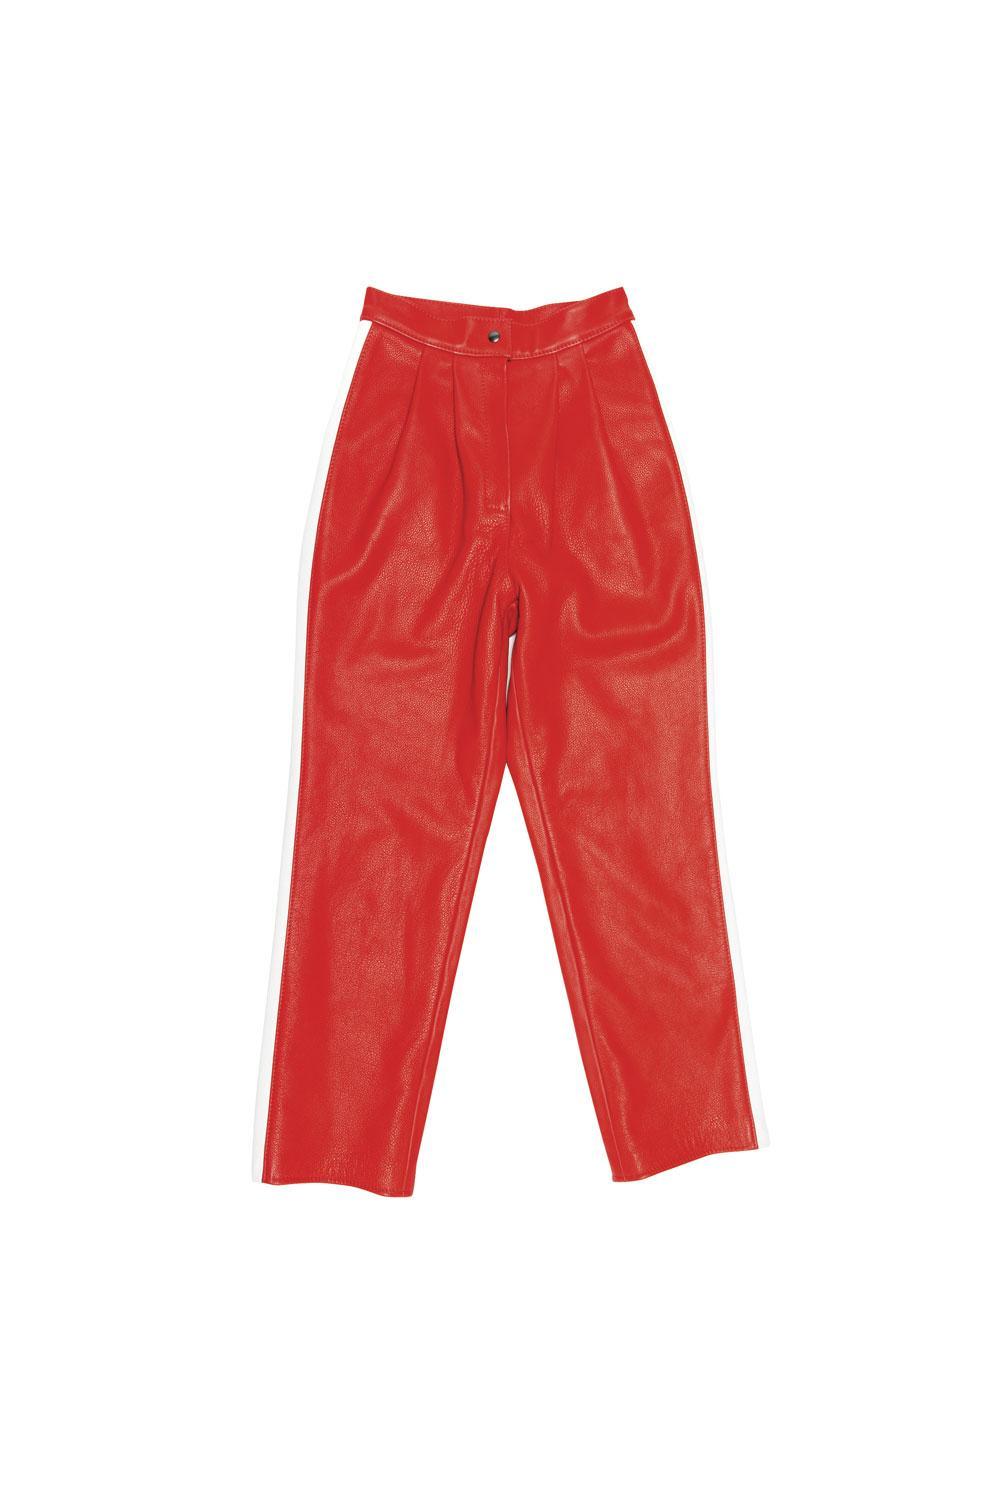 Pantalon en cuir, Snobe, 750 euros